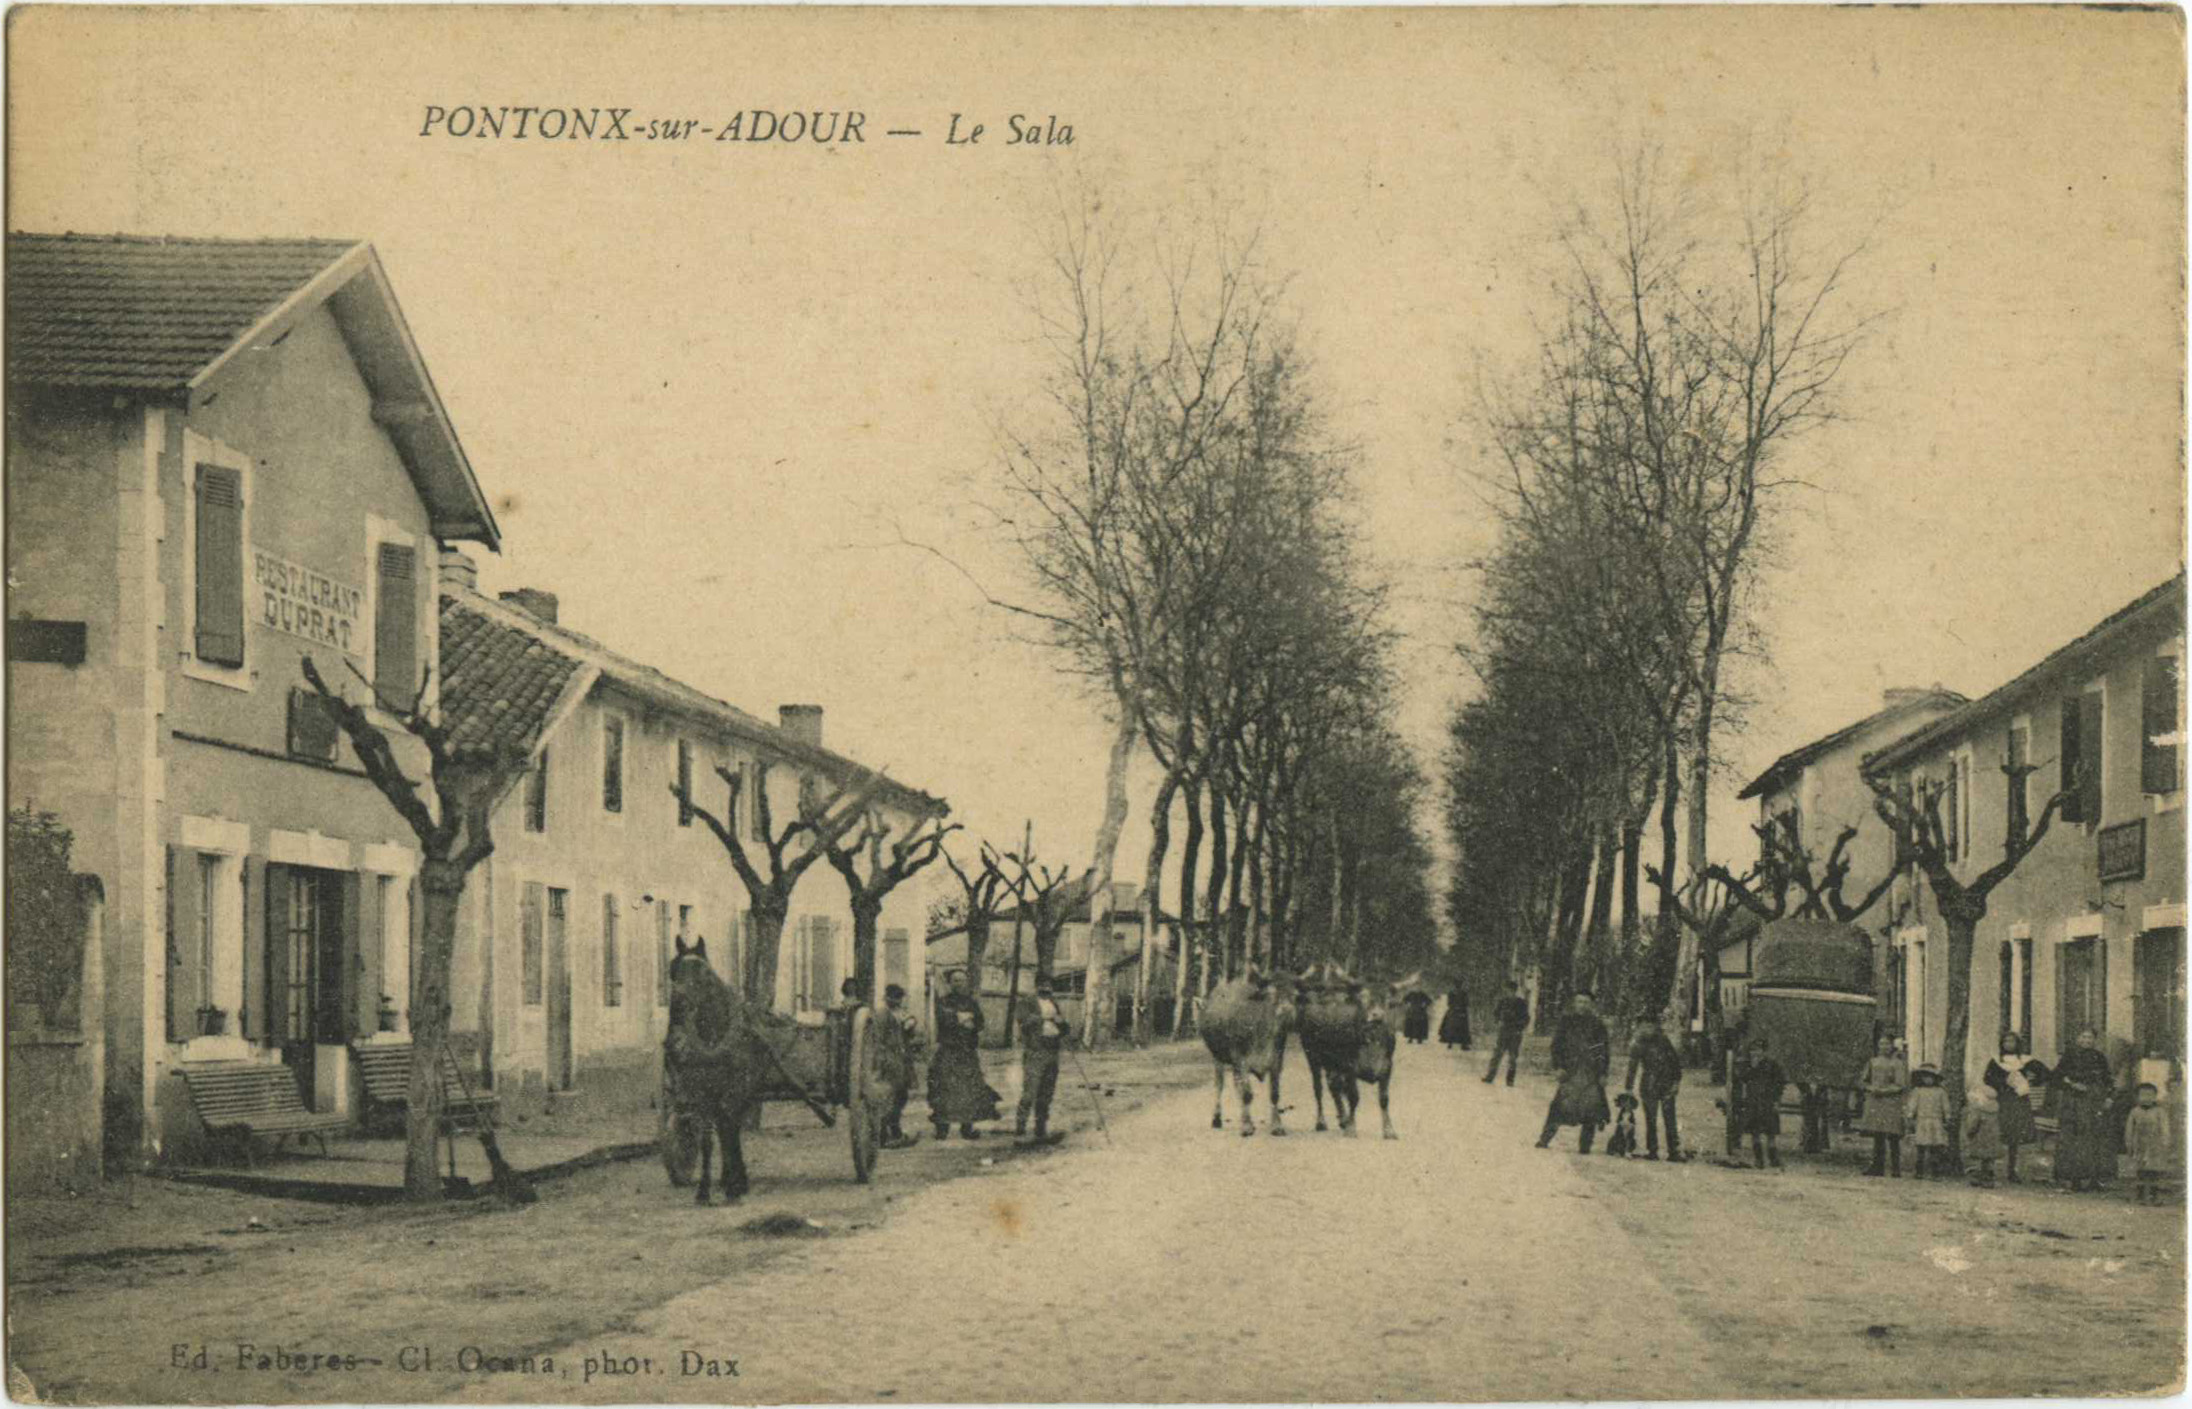 Pontonx-sur-l'Adour - Le Sala